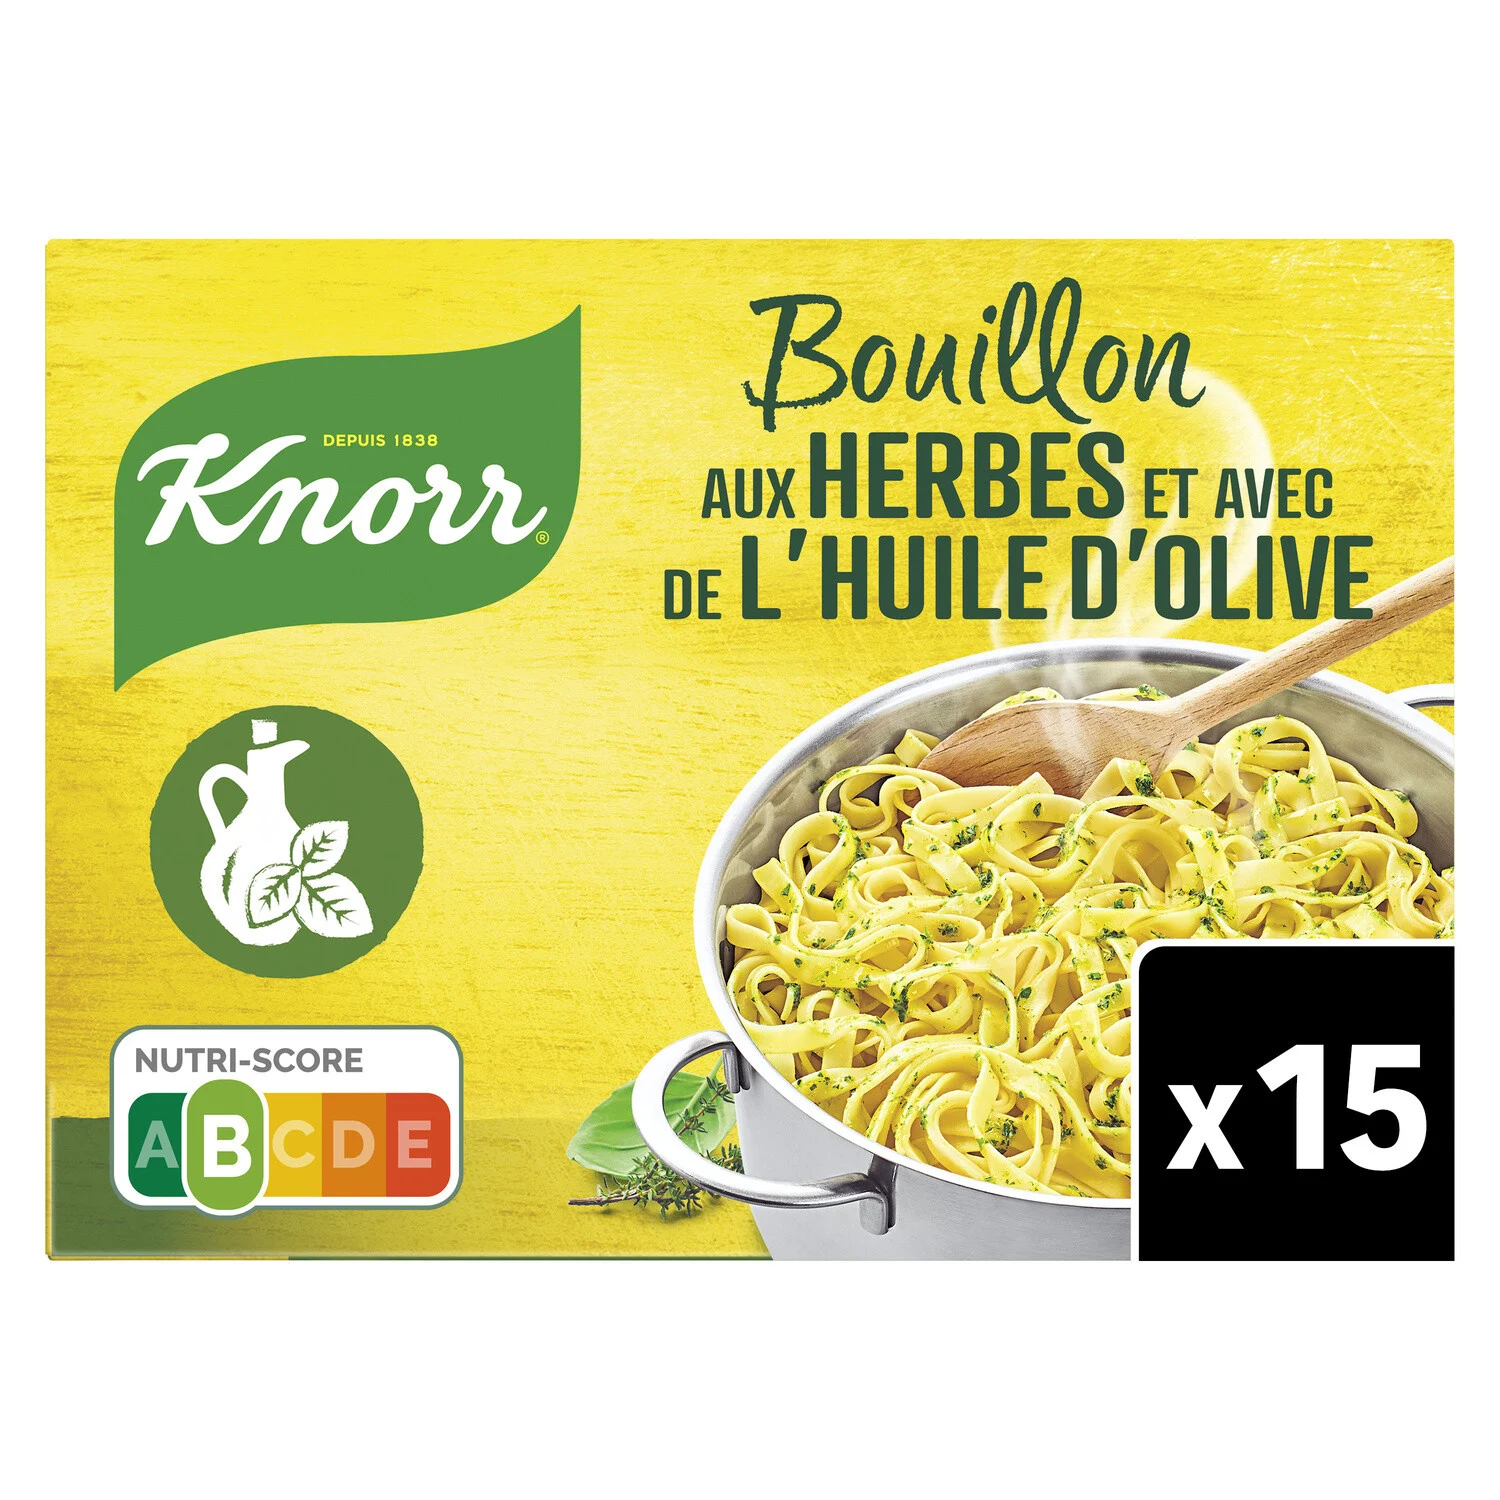 Bouillon Cube Herbes Et Huile D'olive Puget 10g - Knorr